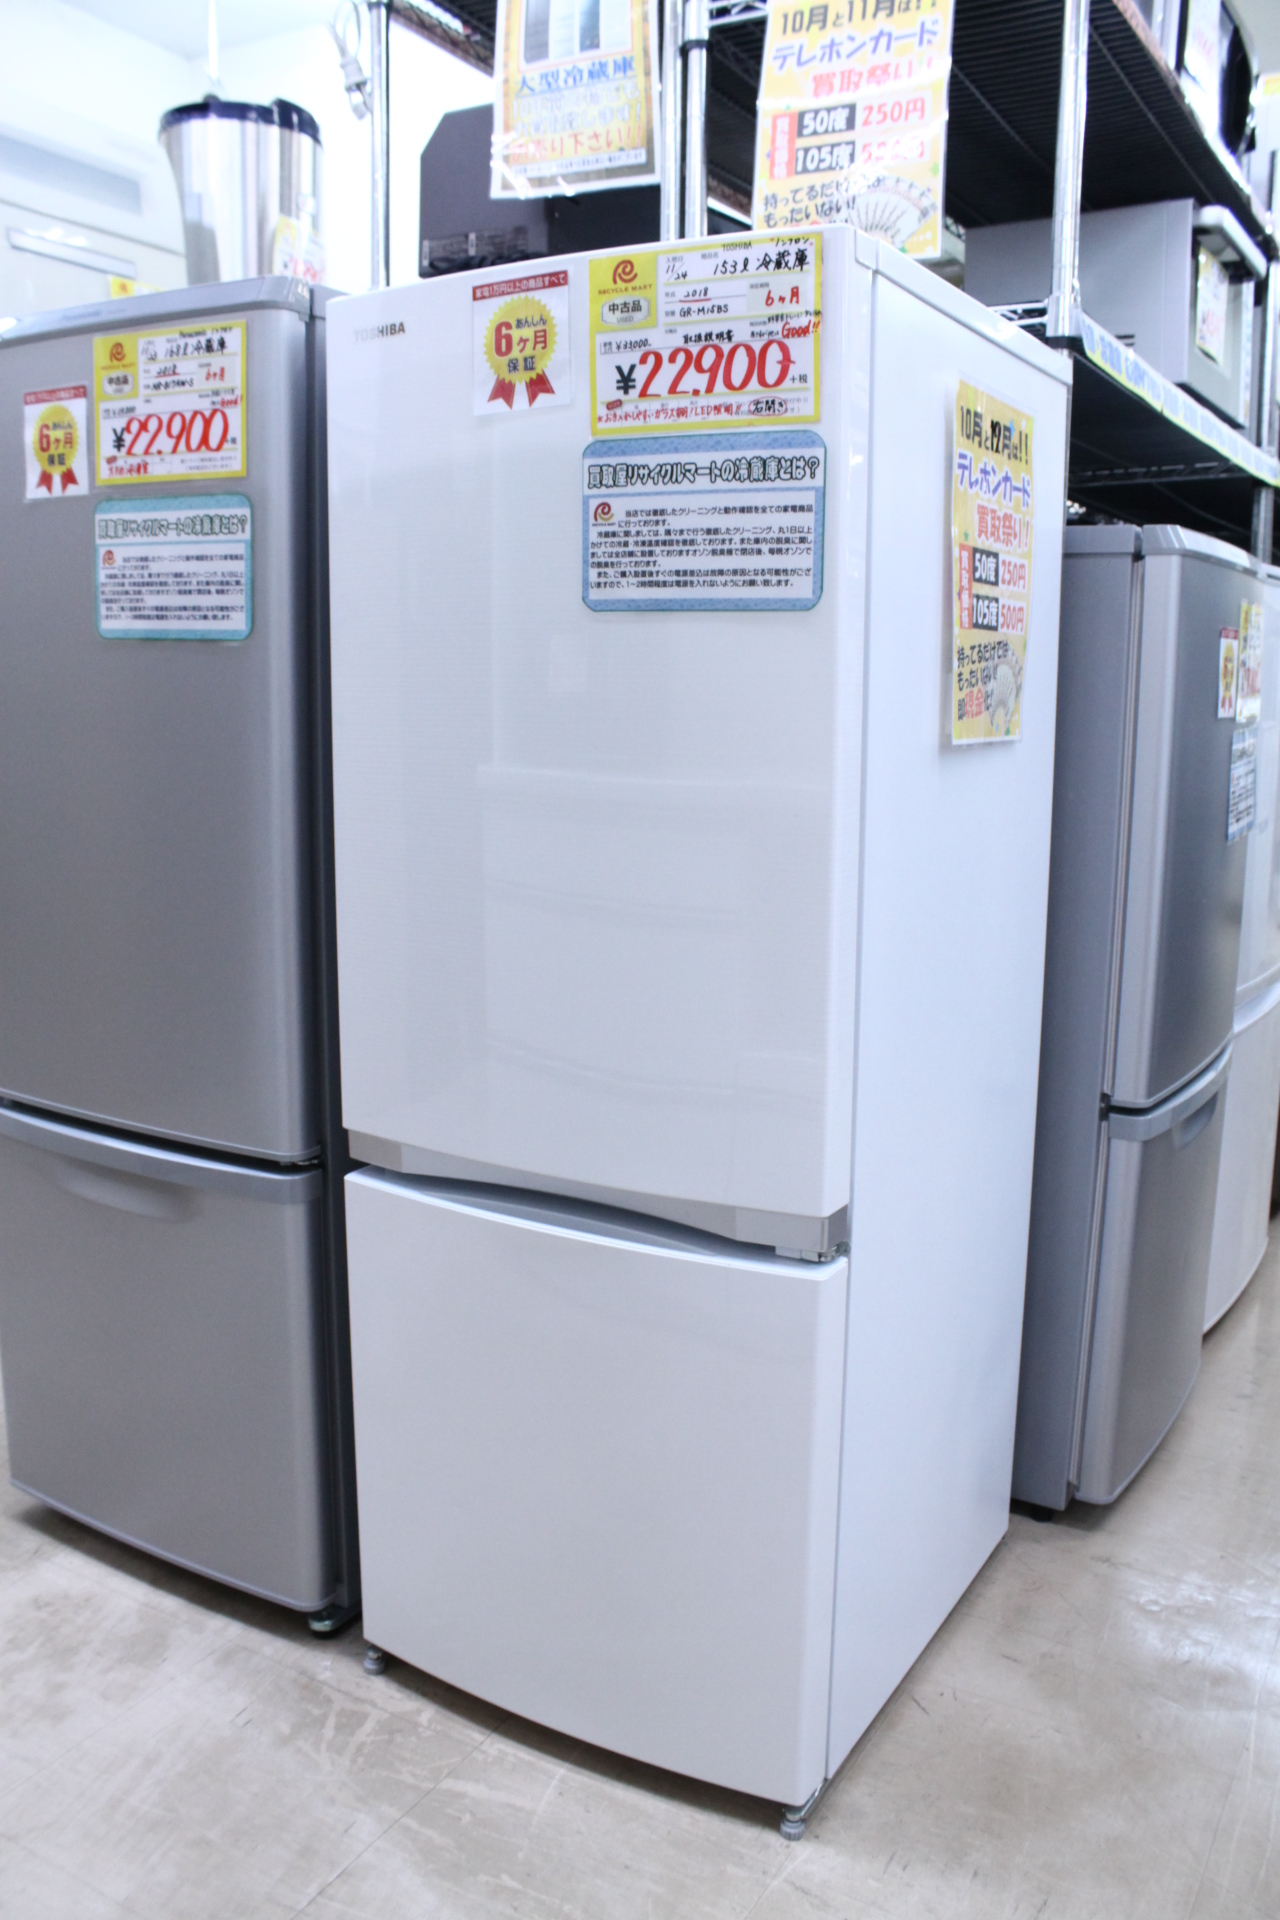 【TOSHIBA 東芝 153L 冷蔵庫 2018年 GR-M15BS LED照明 ノンフロン】を買取させて頂きました！ - リサイクルマートは現在冷蔵庫の買取、家具の買取強化中です！お気軽にお問い合わせください。